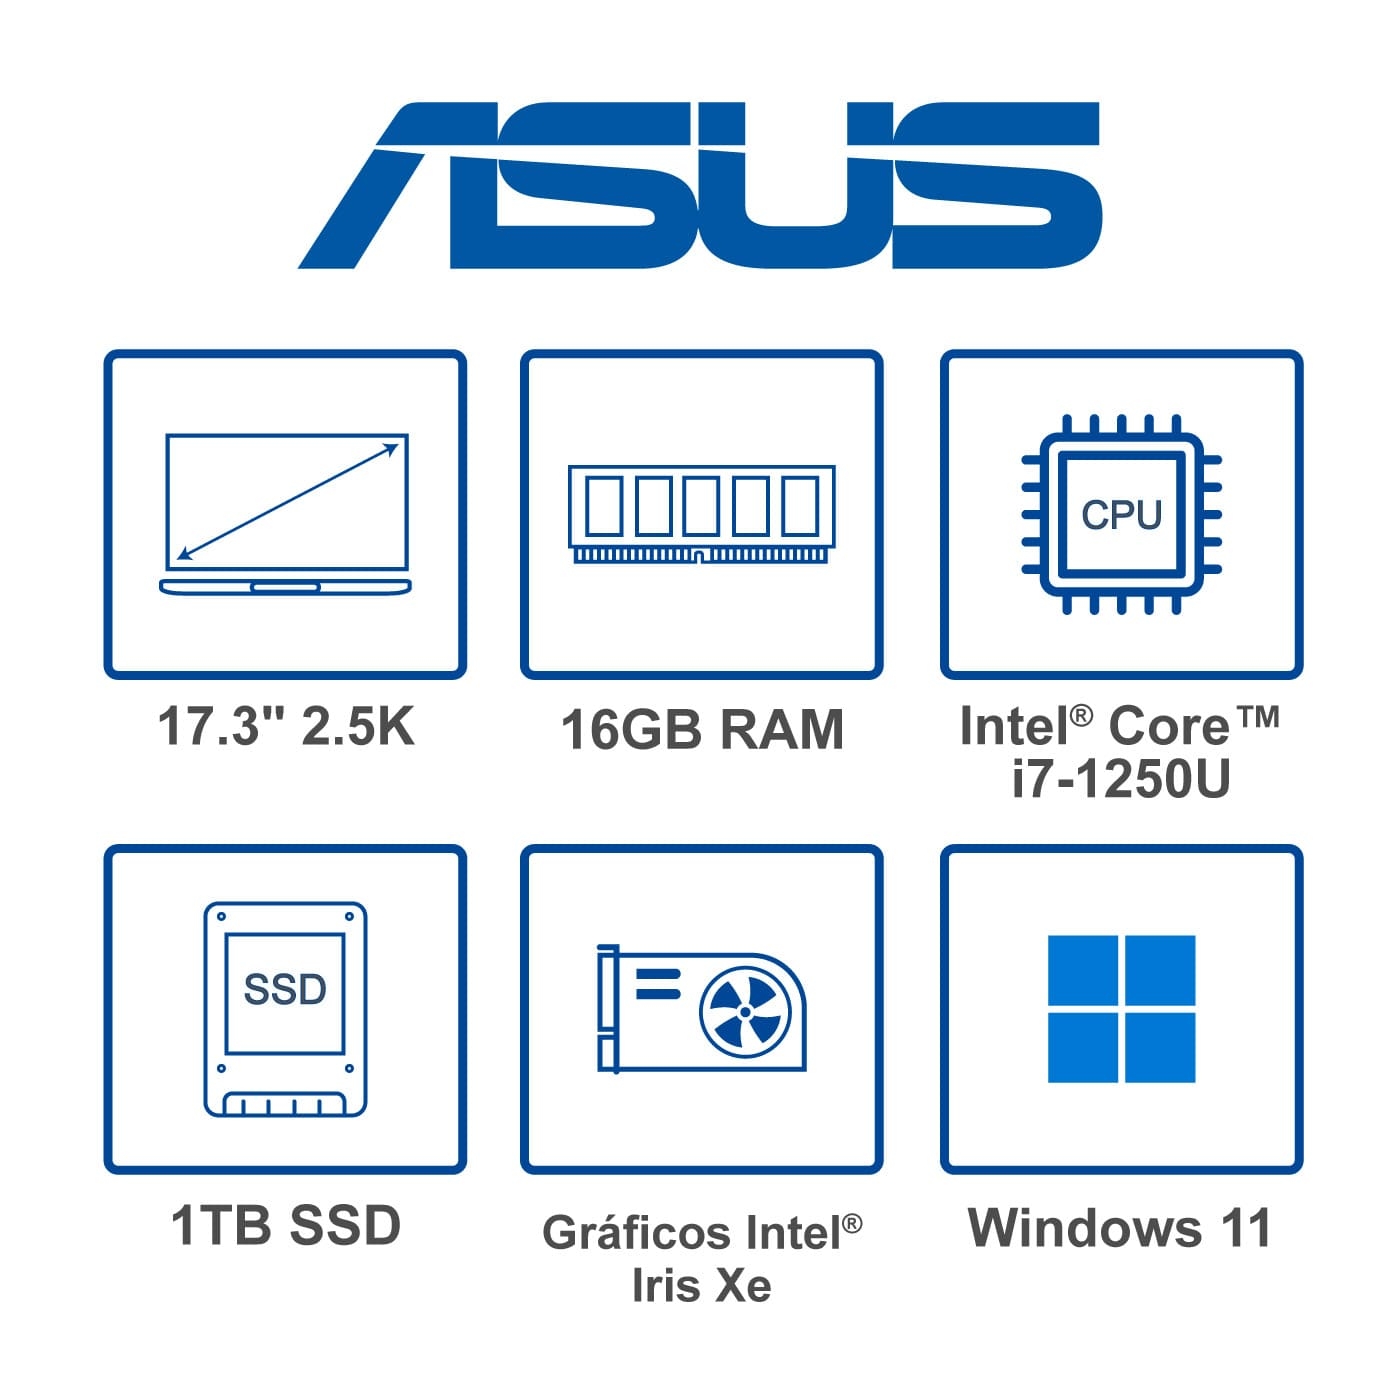 Computador Convertible 2en1 ASUS Zenbook Fold 17.3" Pulgadas UX9702AA - Intel Core i7 - RAM 16GB - Disco SSD 1TB - Negro